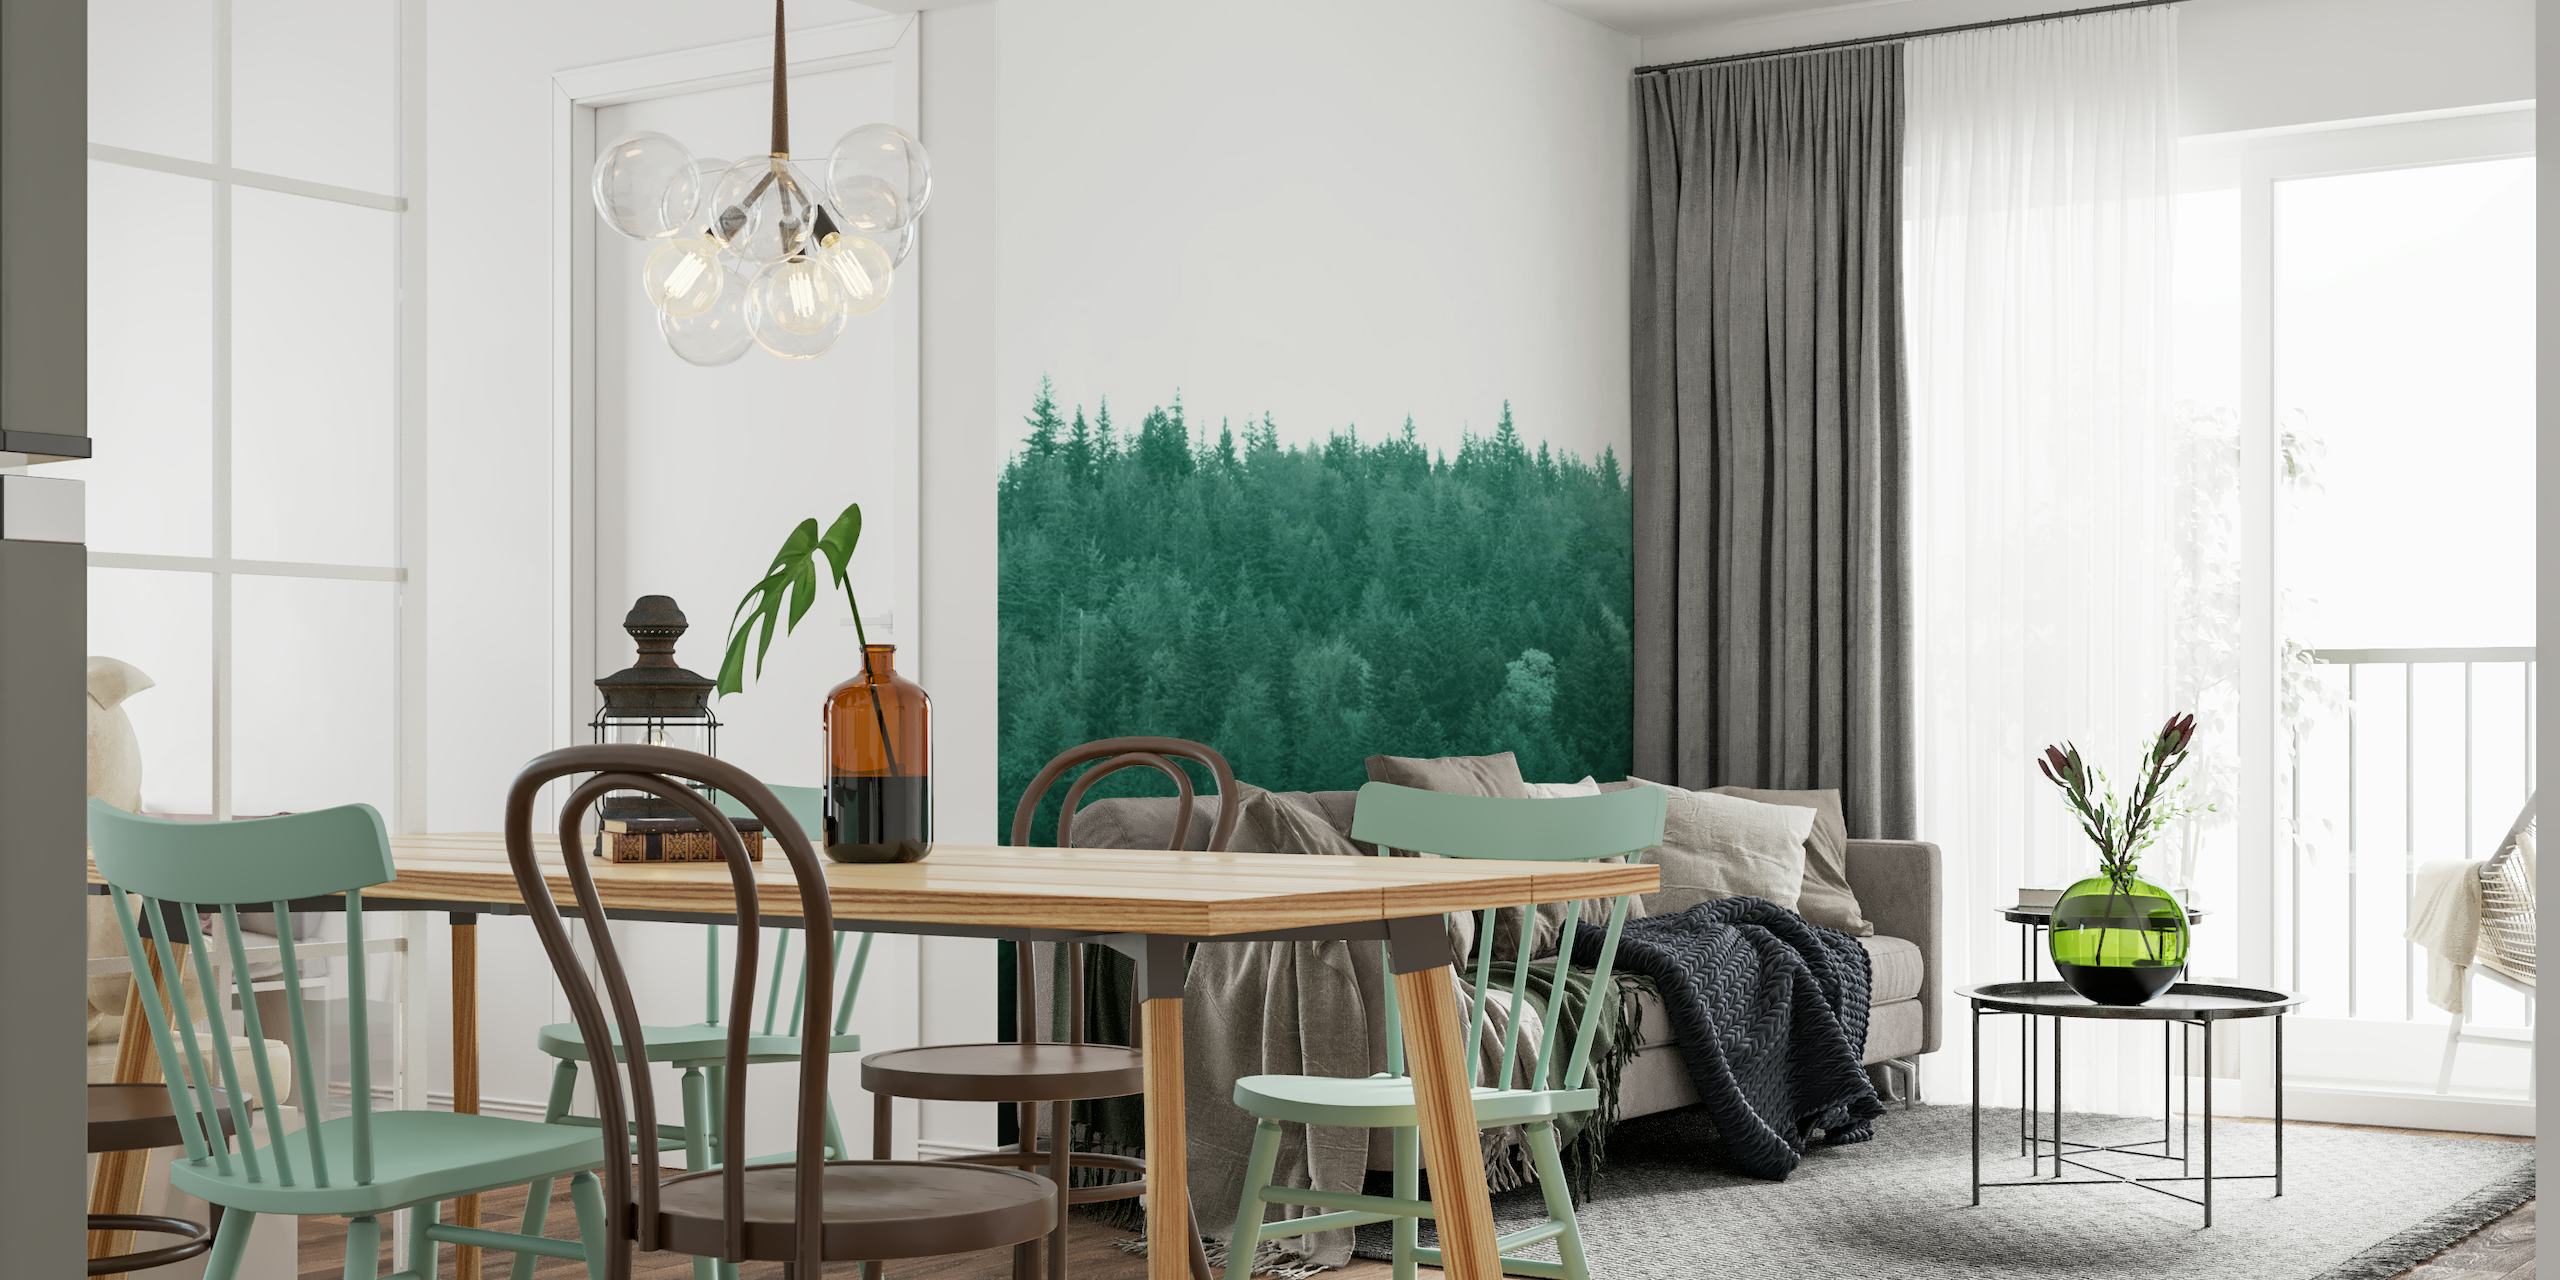 Deep Green Pine Trees 1 wallpaper